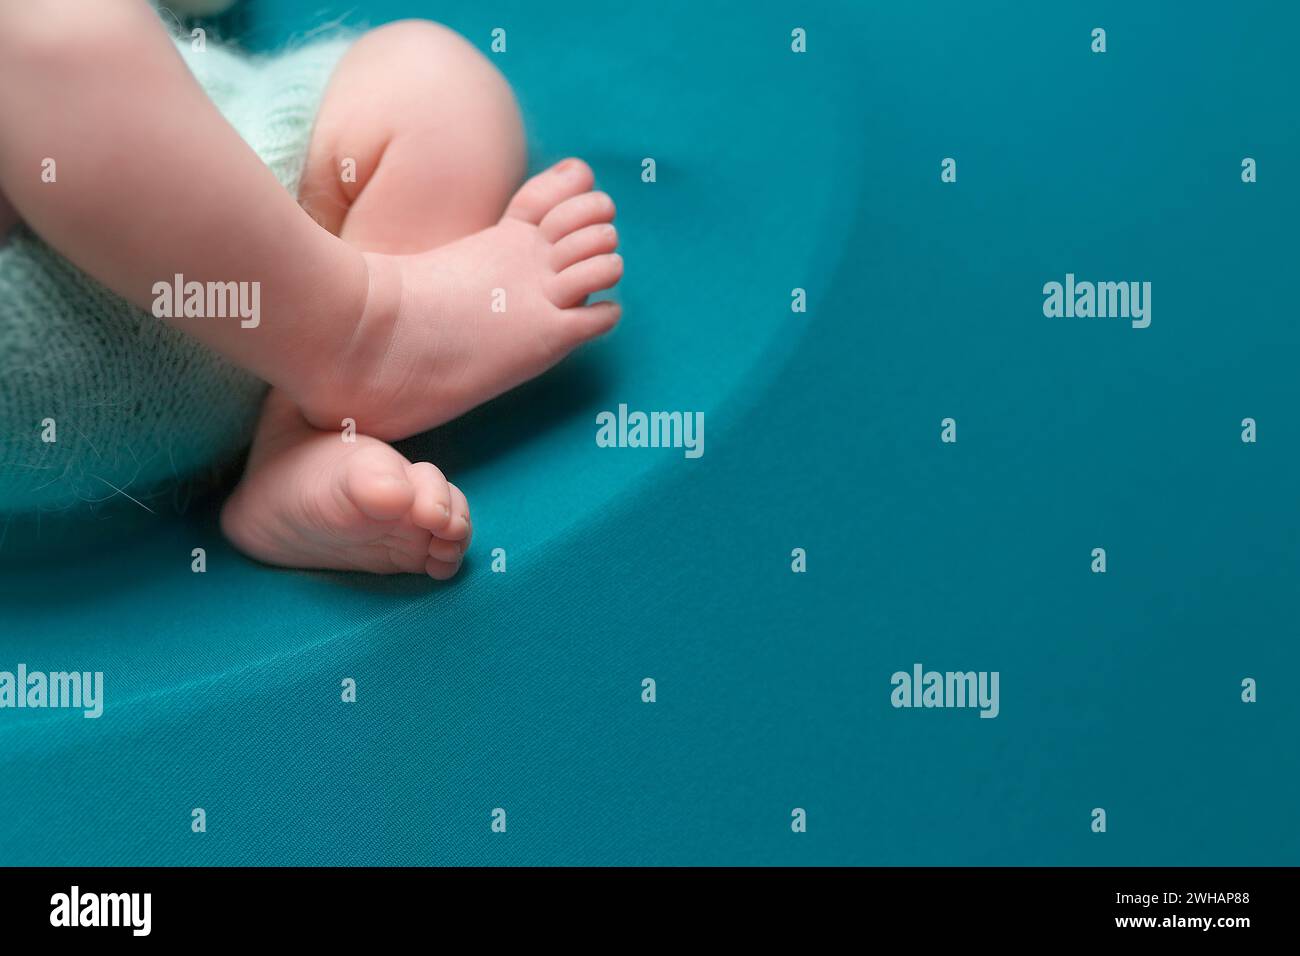 pieds de bébé nouveau-né sur fond bleu Banque D'Images